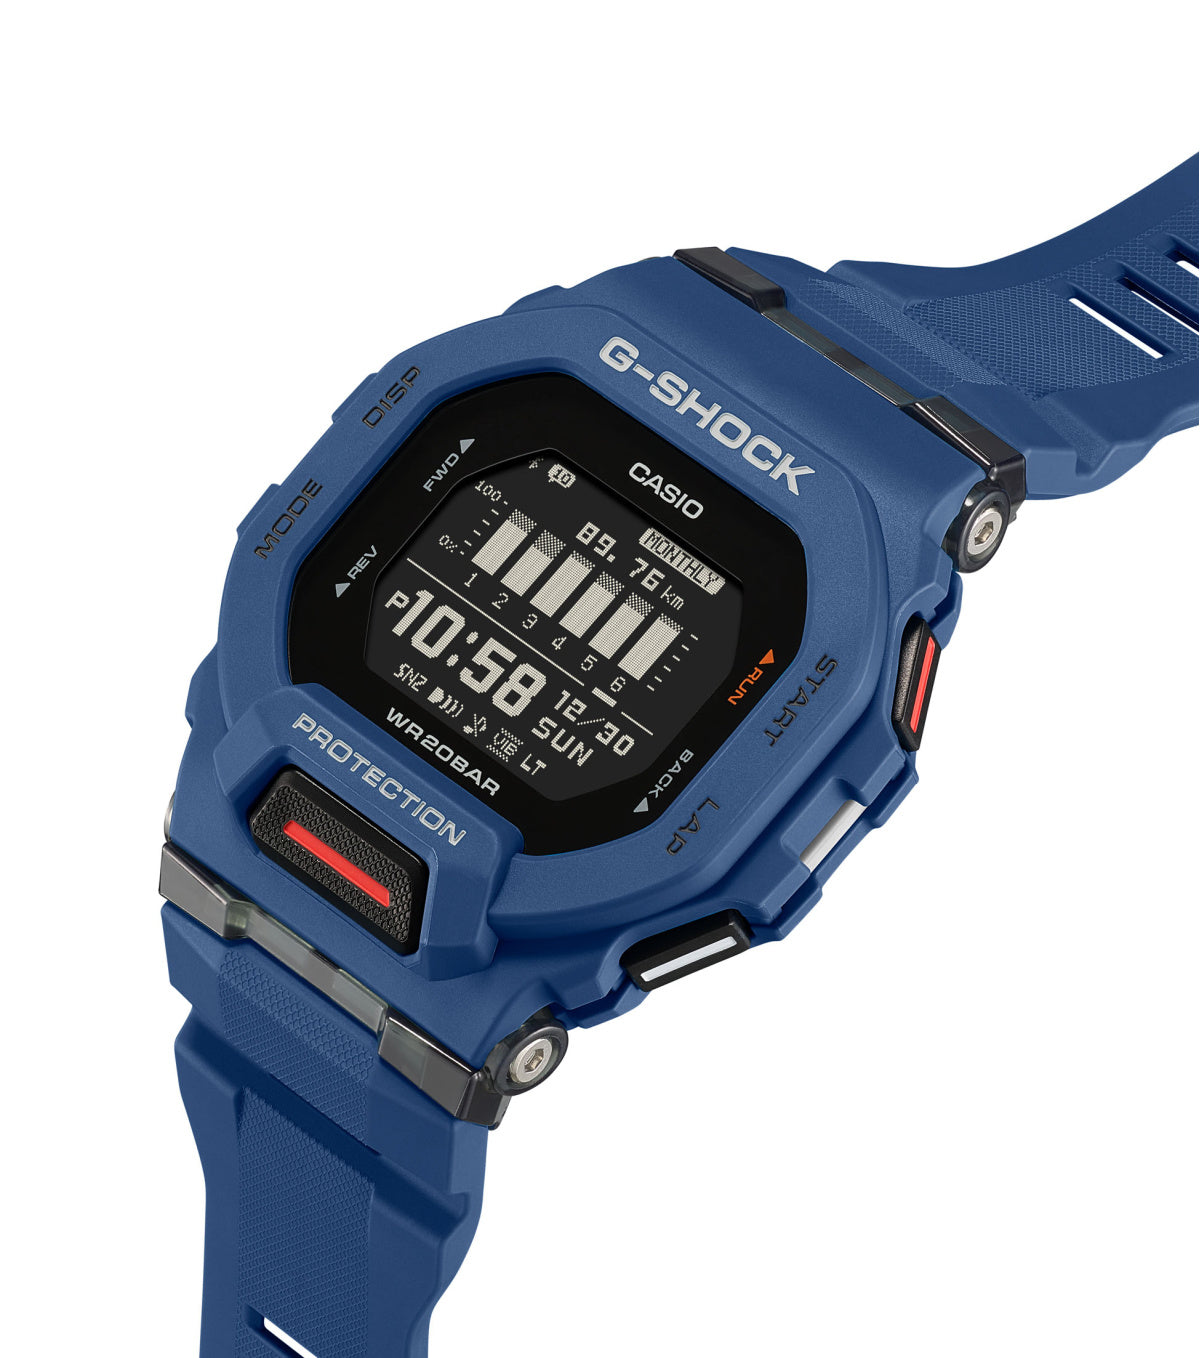 Reloj G-Shock azul para hombre GBD-200-2ER